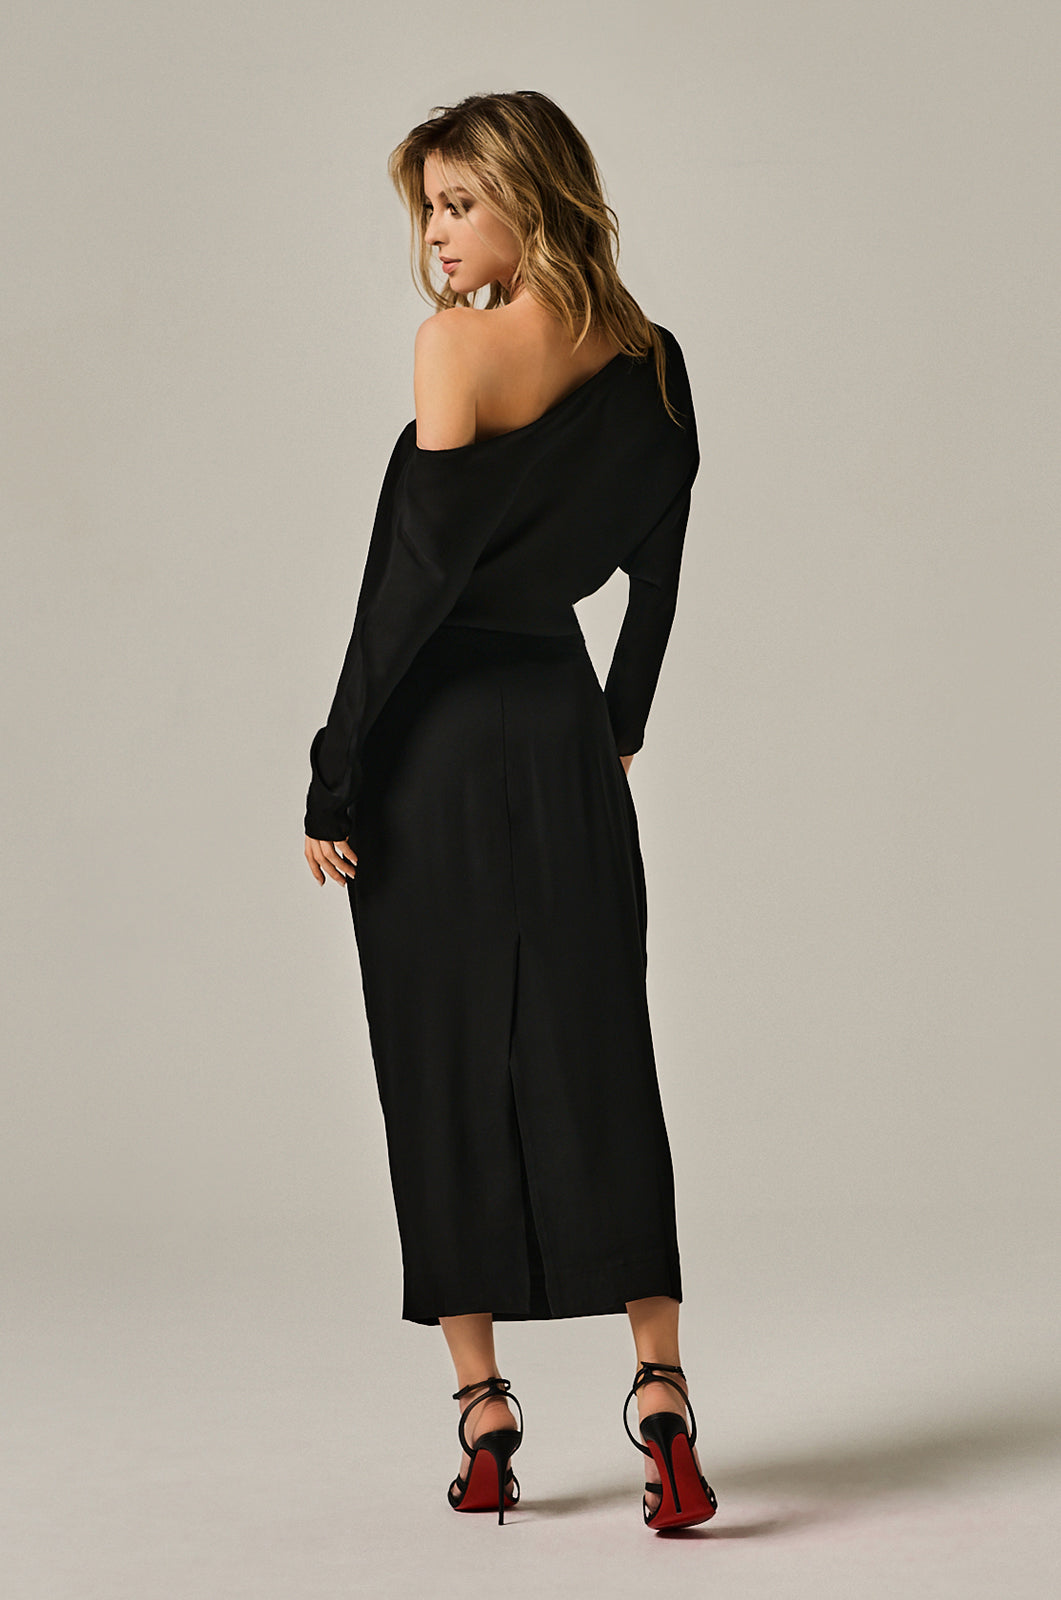 Silk black georgette off shoulder on left side dress. Center back slit